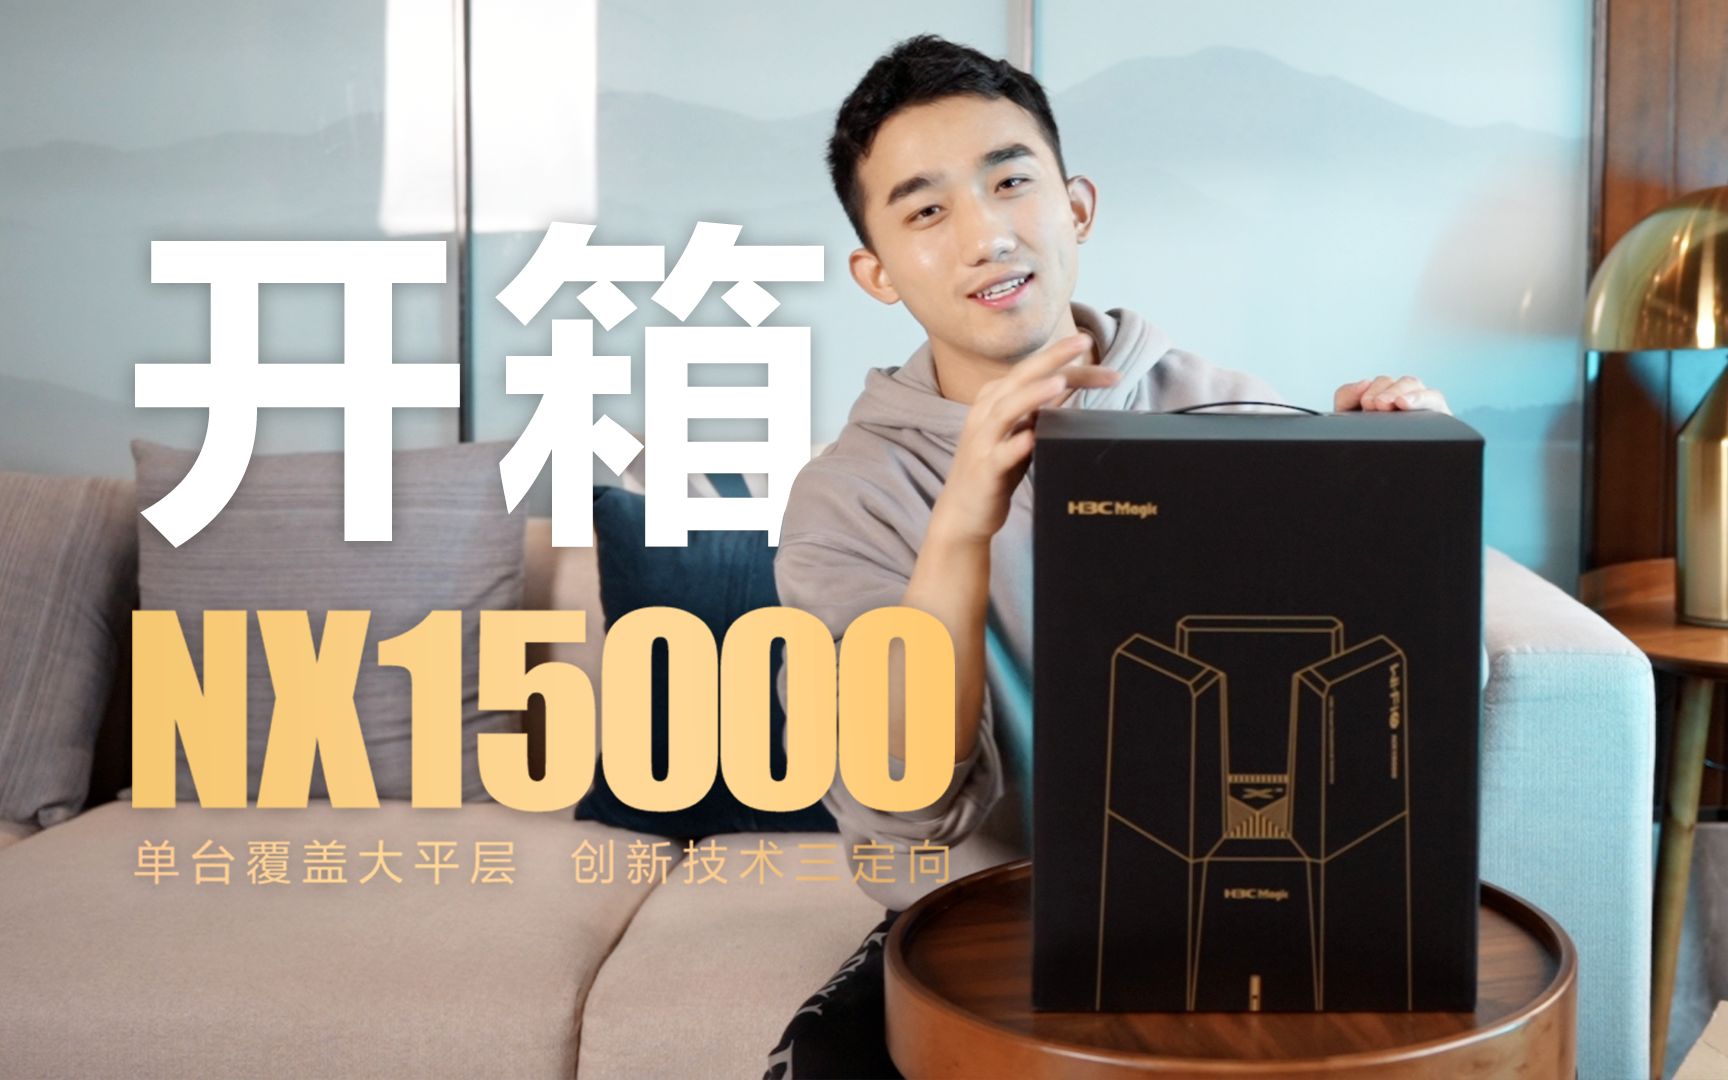 万兆旗舰路由器H3C Magic NX15000开箱！